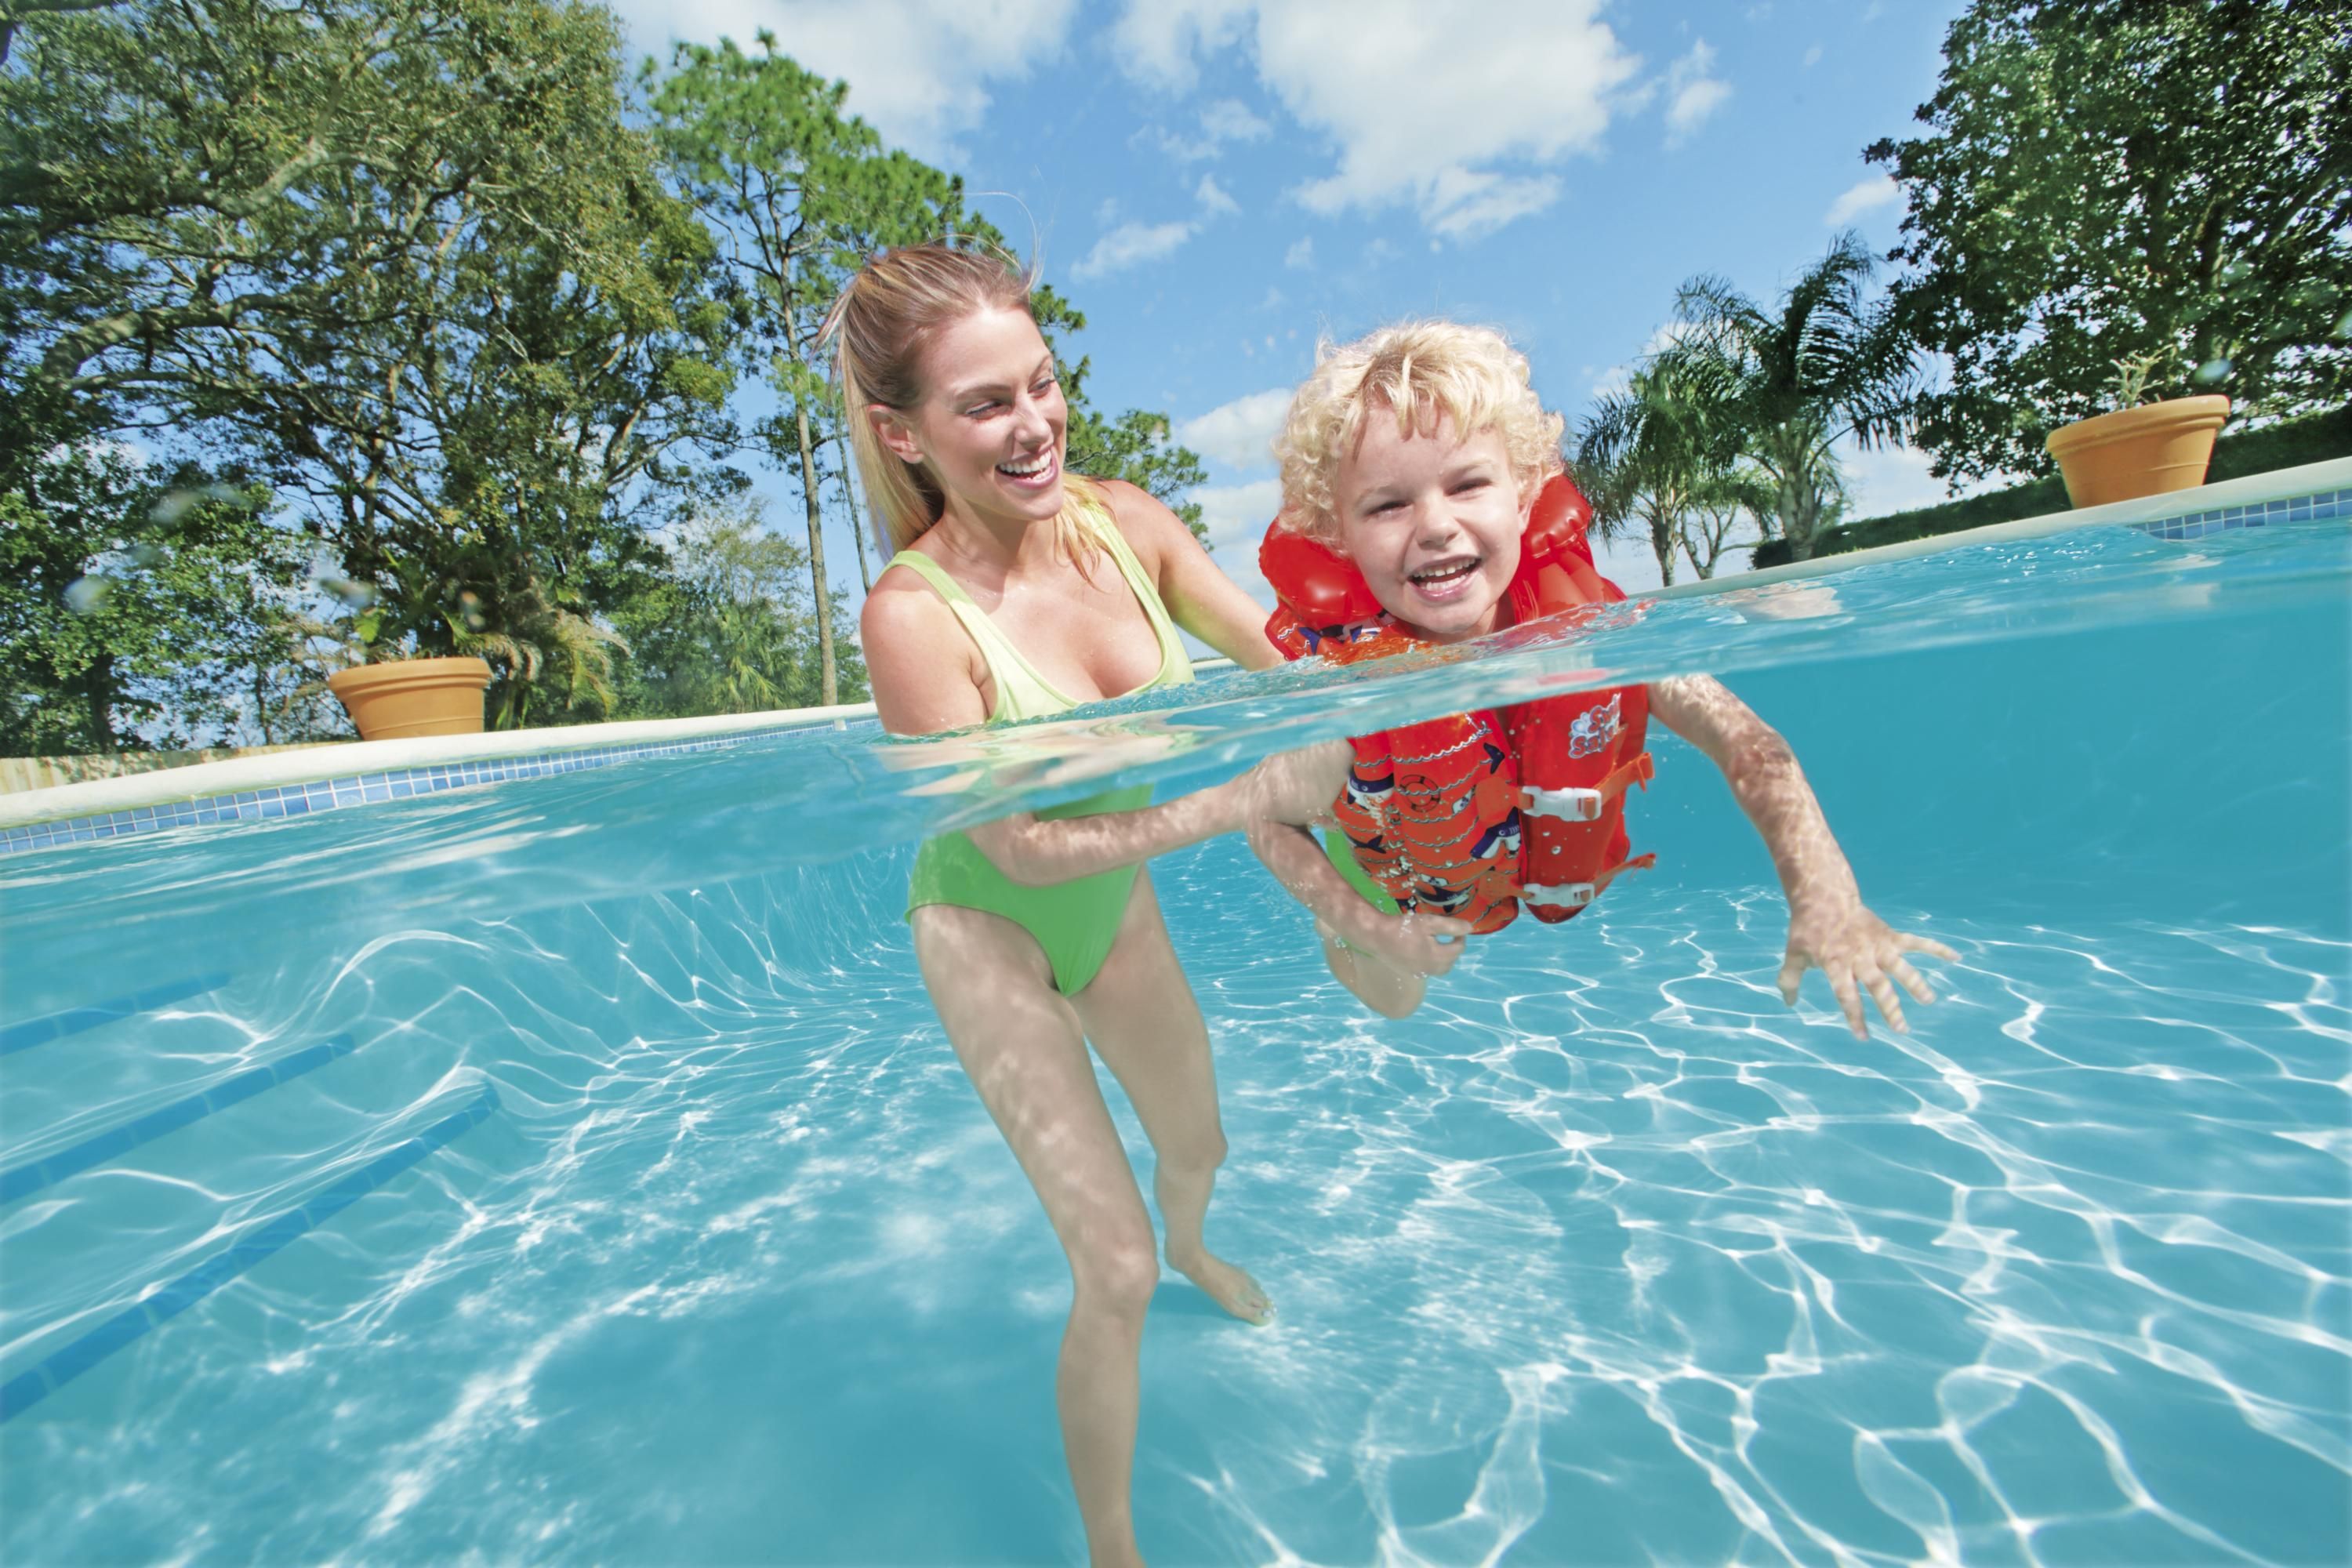 Boglia Kleinkind-Schwimmweste Schwimmanzug-Badebekleidung für Kinderwesten mit verstellbarem Sicherheitsgurt für Unisex-Kinder Schwimmwesten für Kleinkinder 